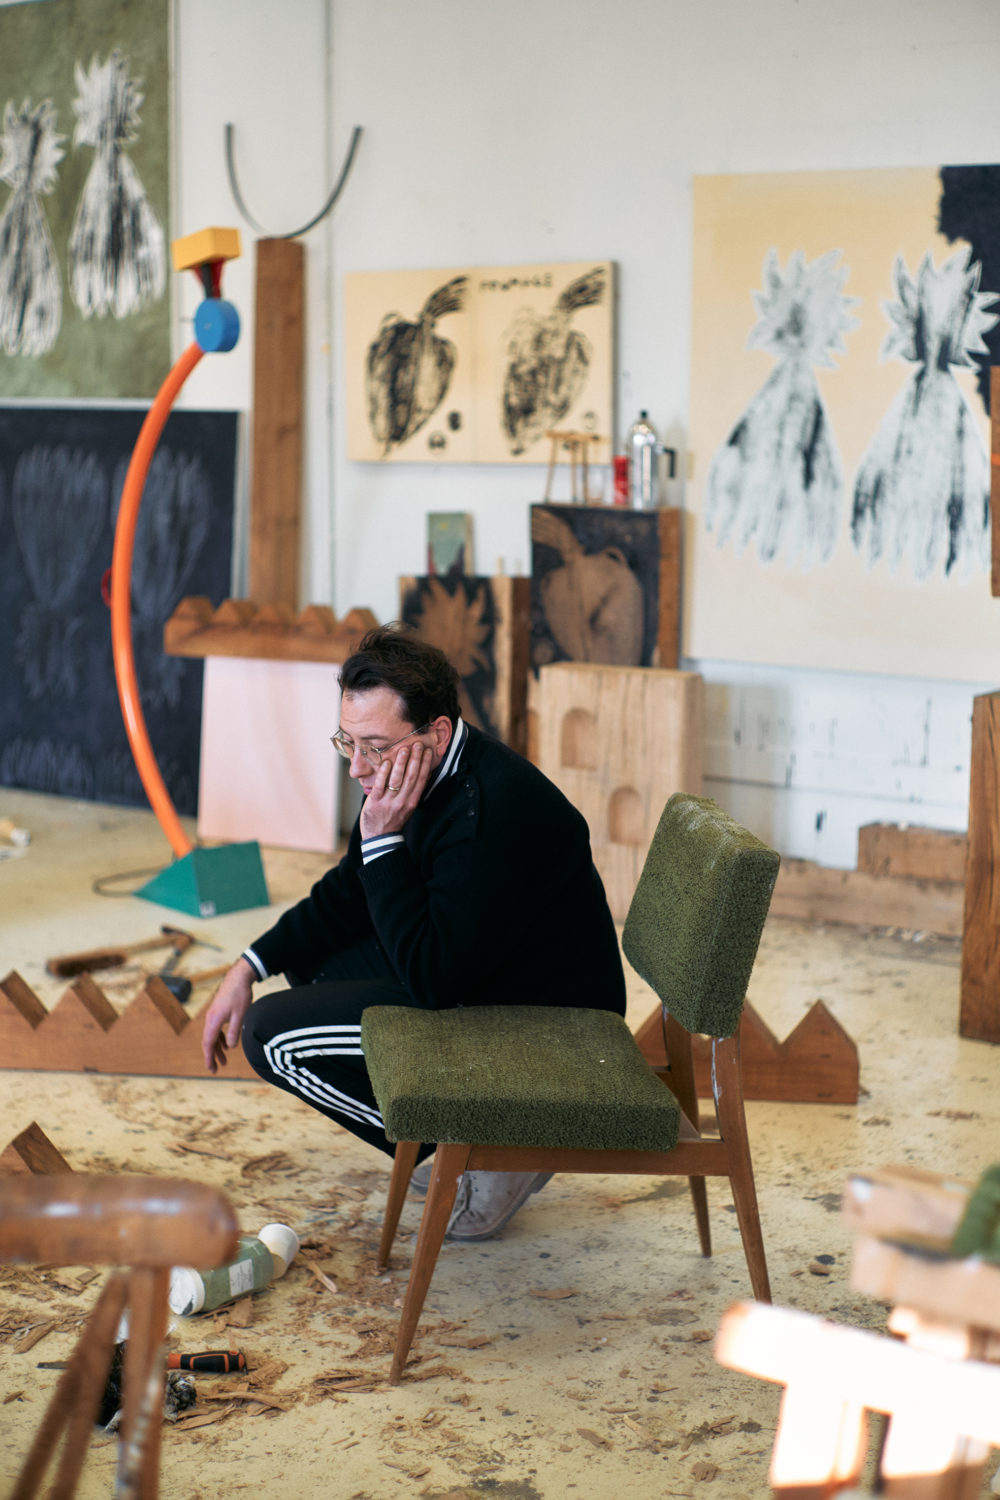 Artist talk with Edgar Sarin - Le Grand Café